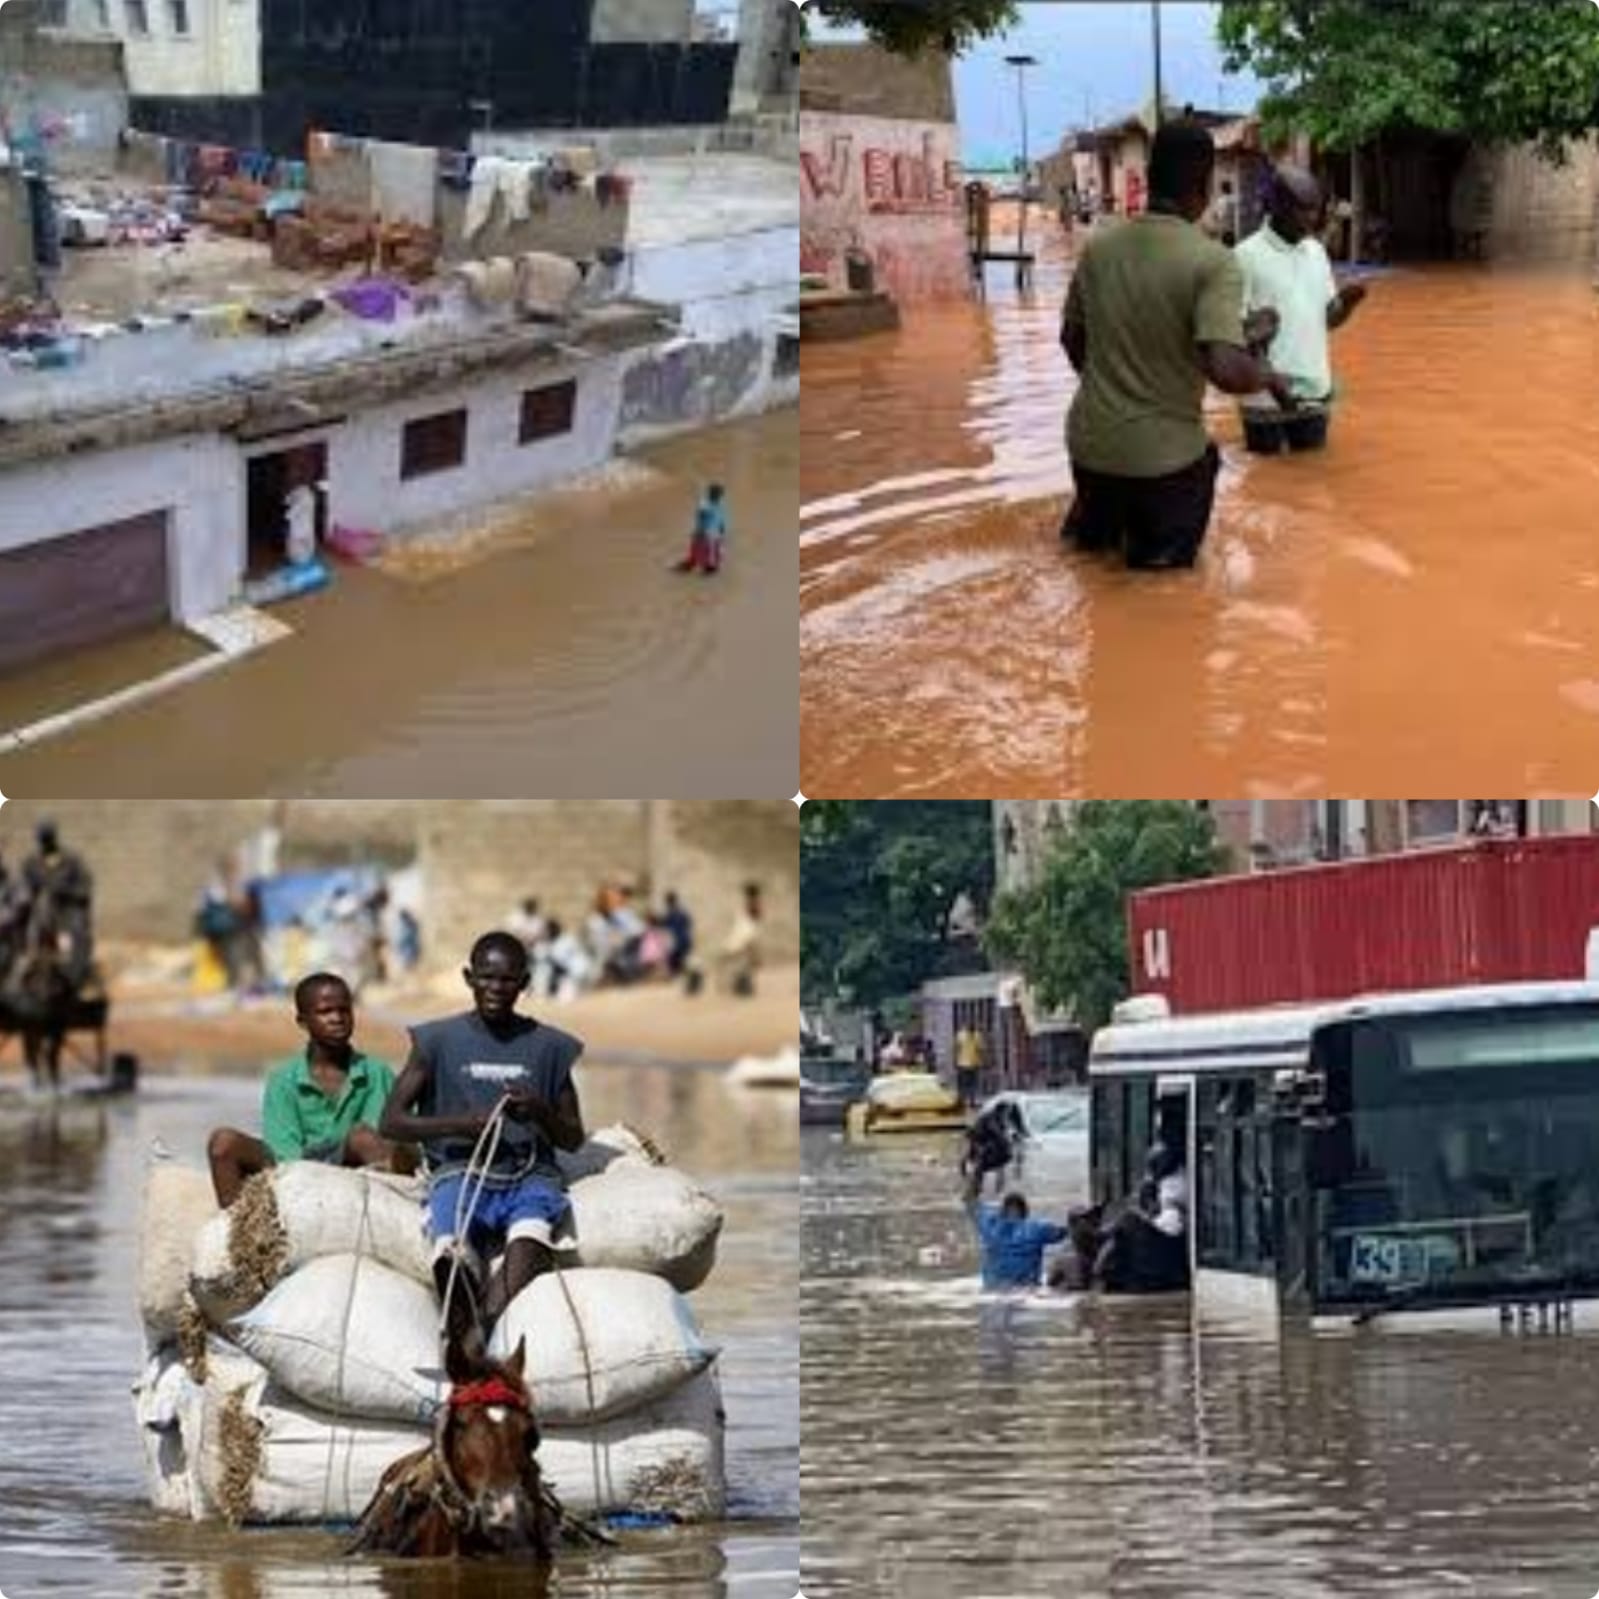 URGENT NO COMENT: Le Sénégal patauge dans l'eau après la pluie du samedi. REGARDEZ